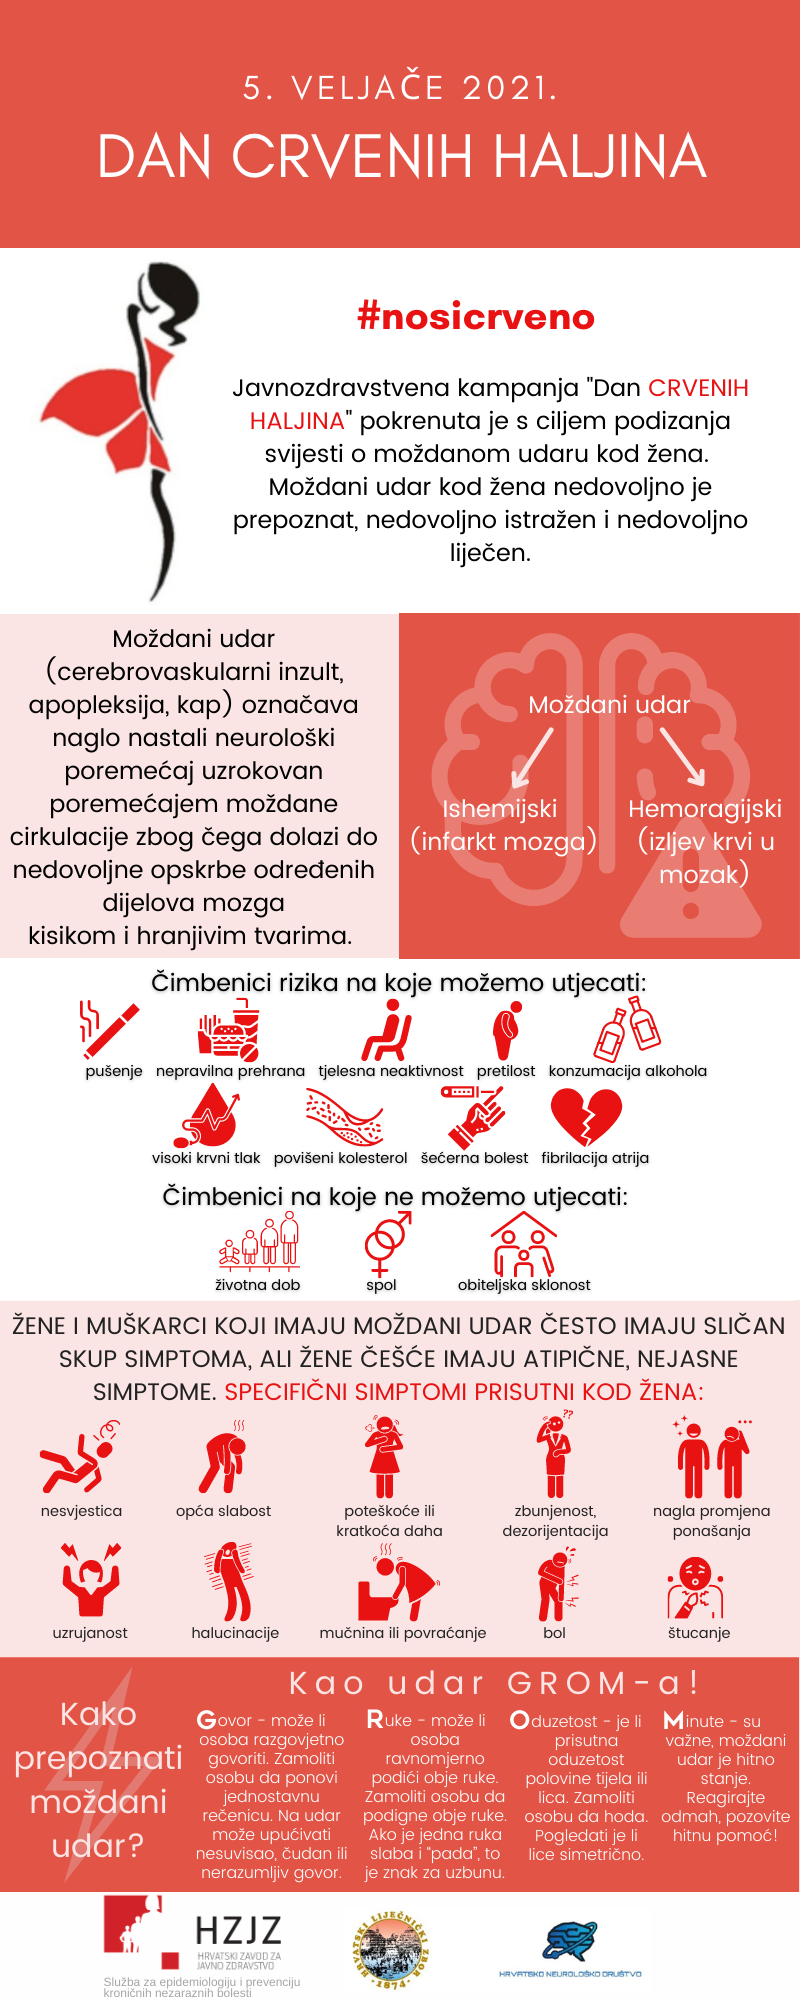 Dan-crvenih-haljina_infografika